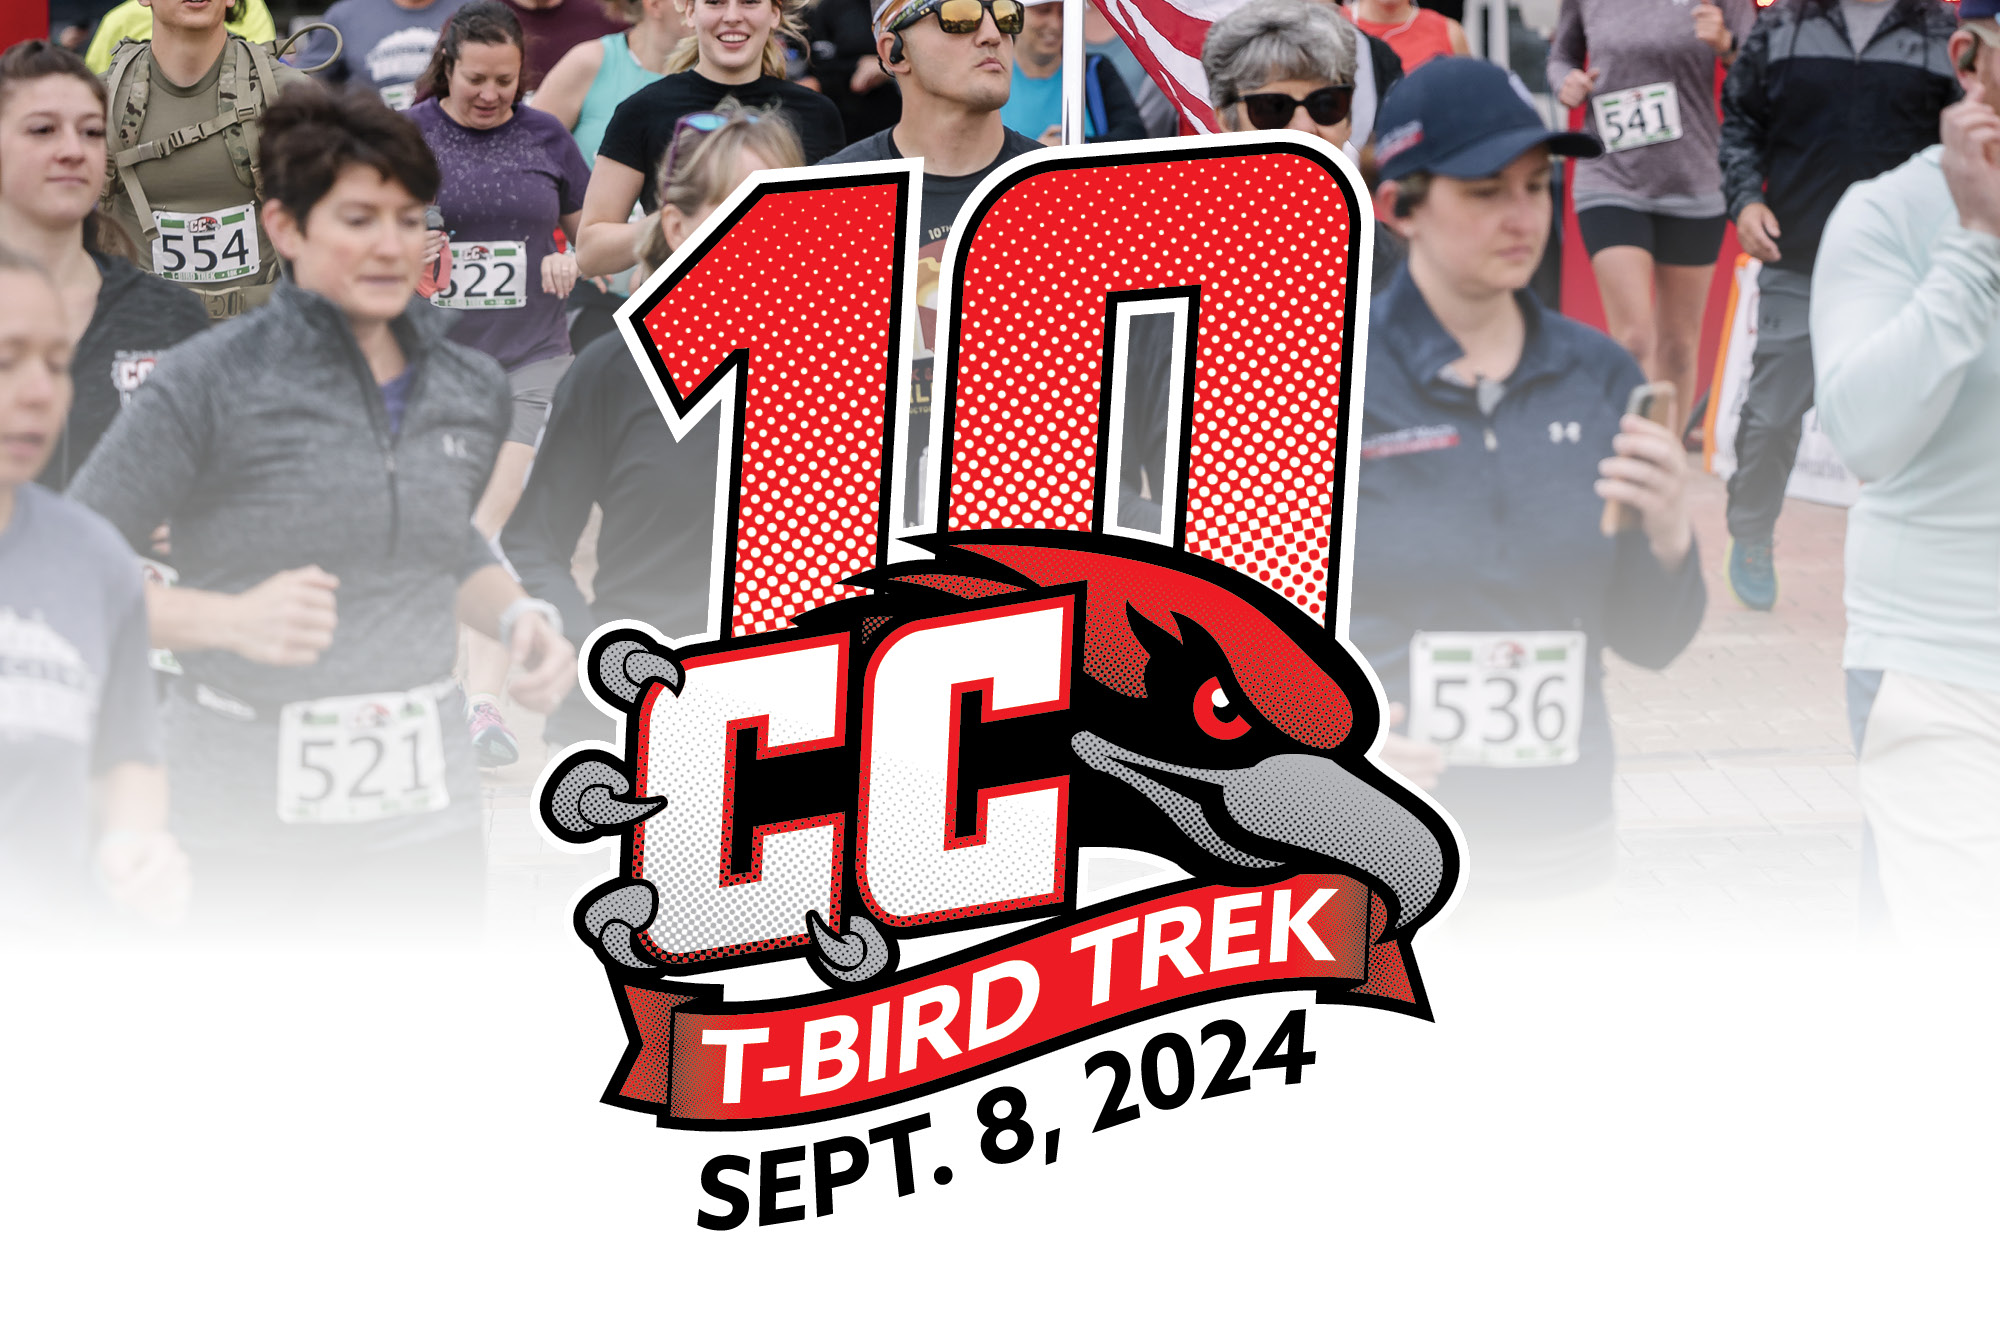 Image for 2024 T-Bird Trek press releases.